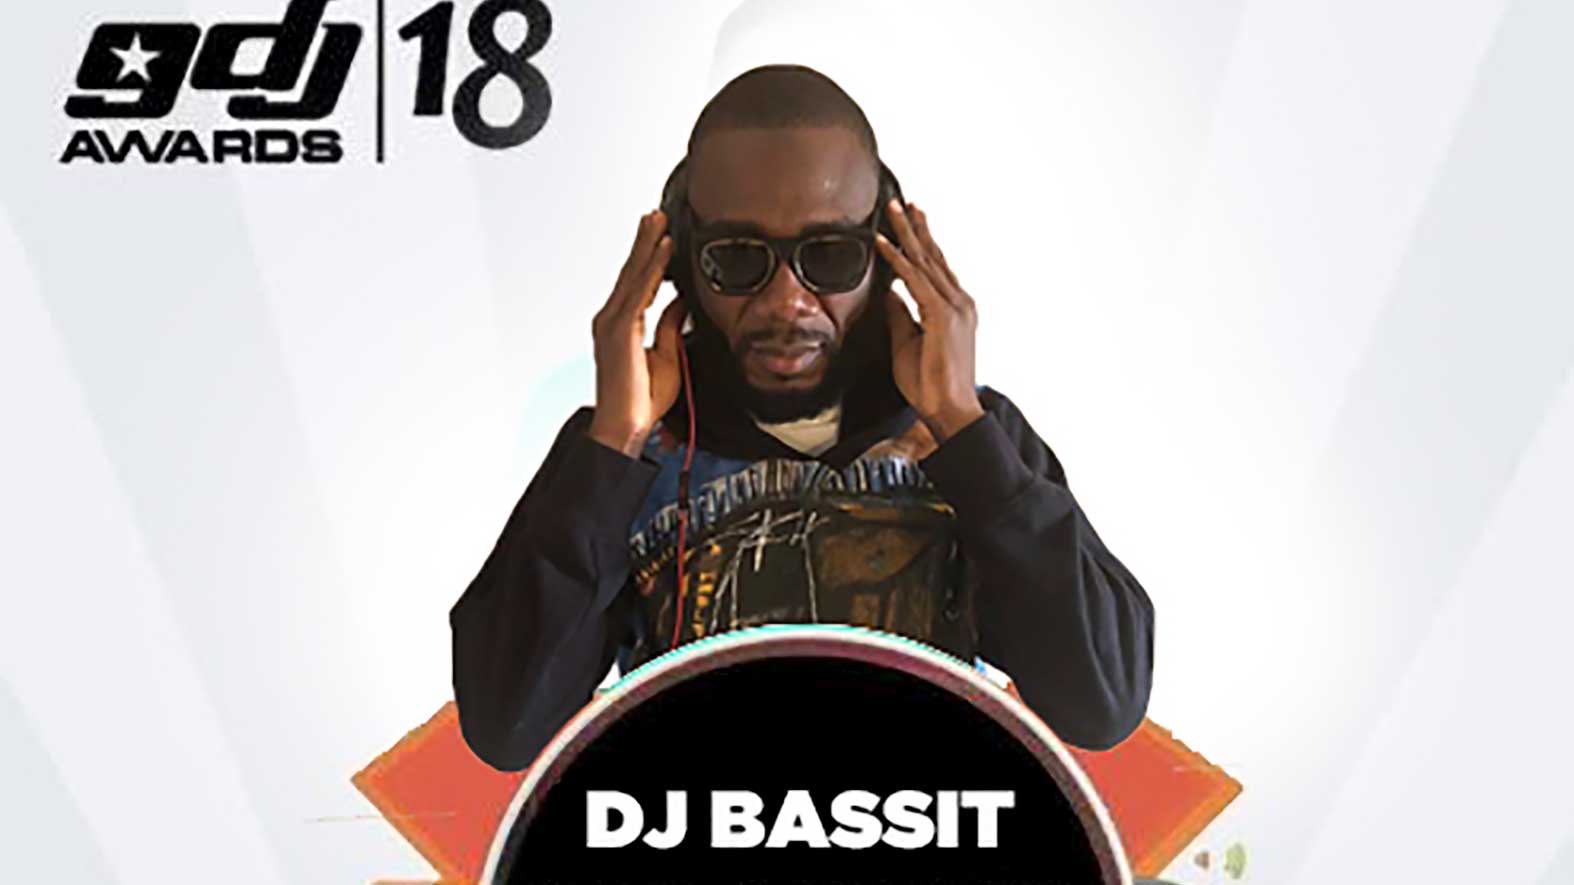 DJ Bassit